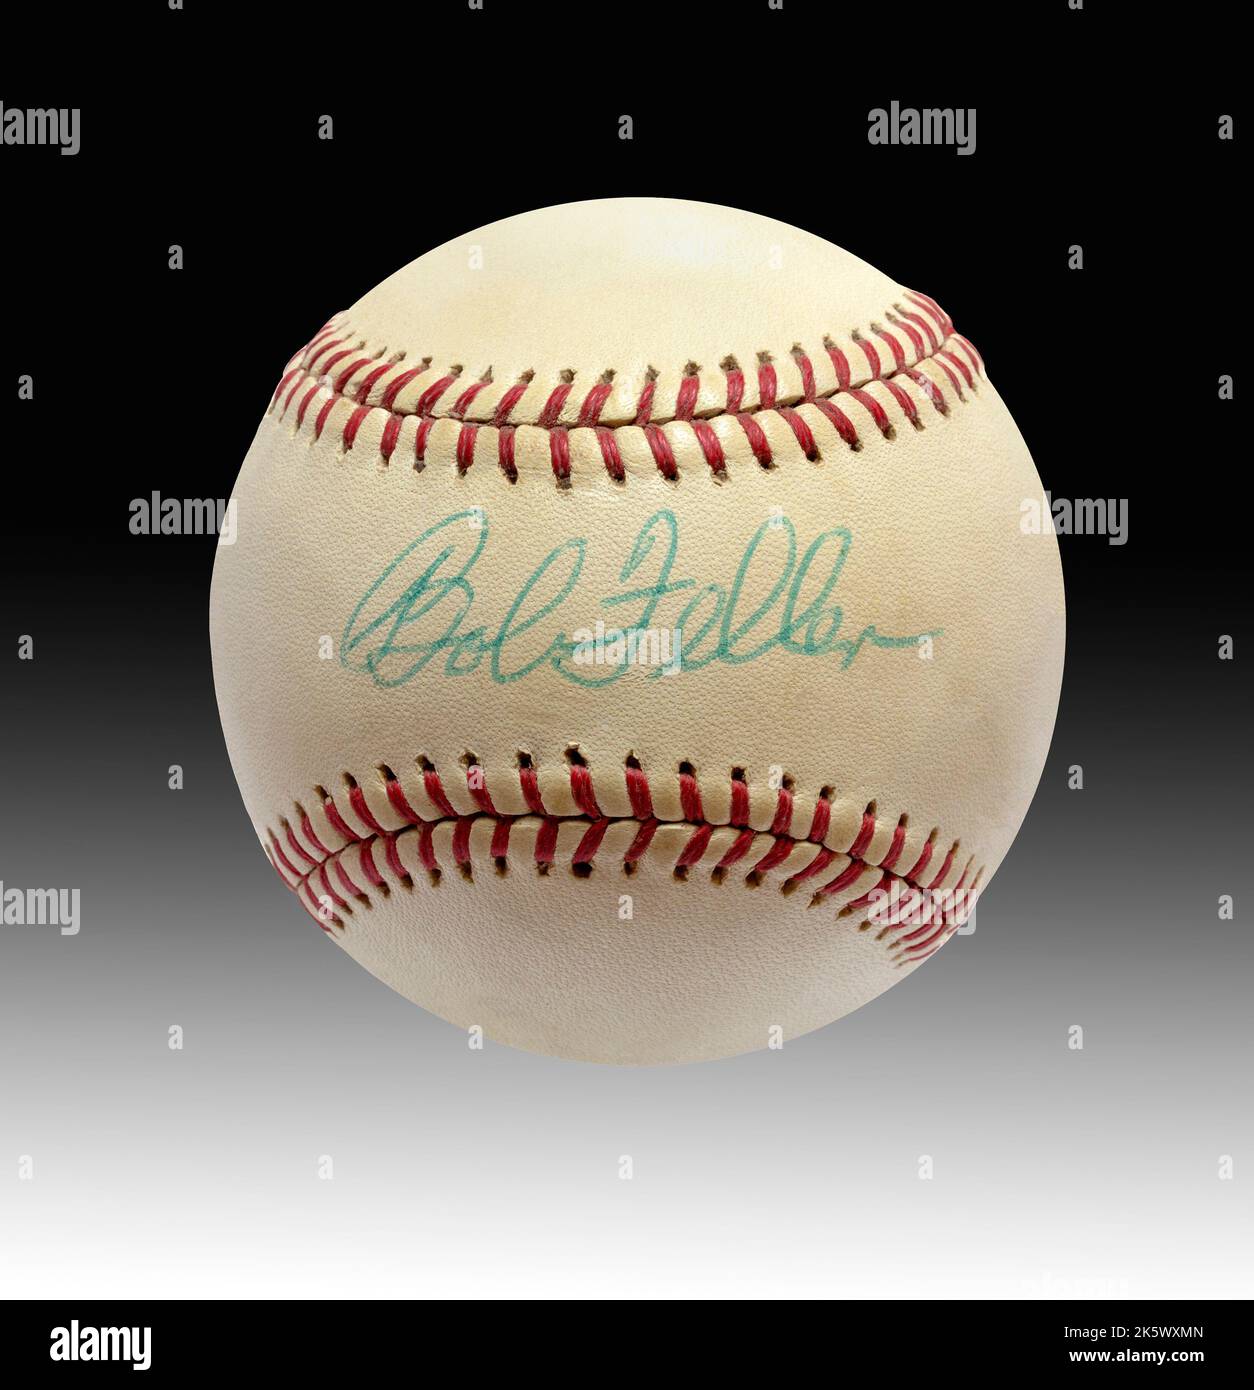 Ein historischer, handsignierter Baseballspieler, signiert von der Hall of Fame der Cleveland Indians, Pitcher Bob Feller Stockfoto